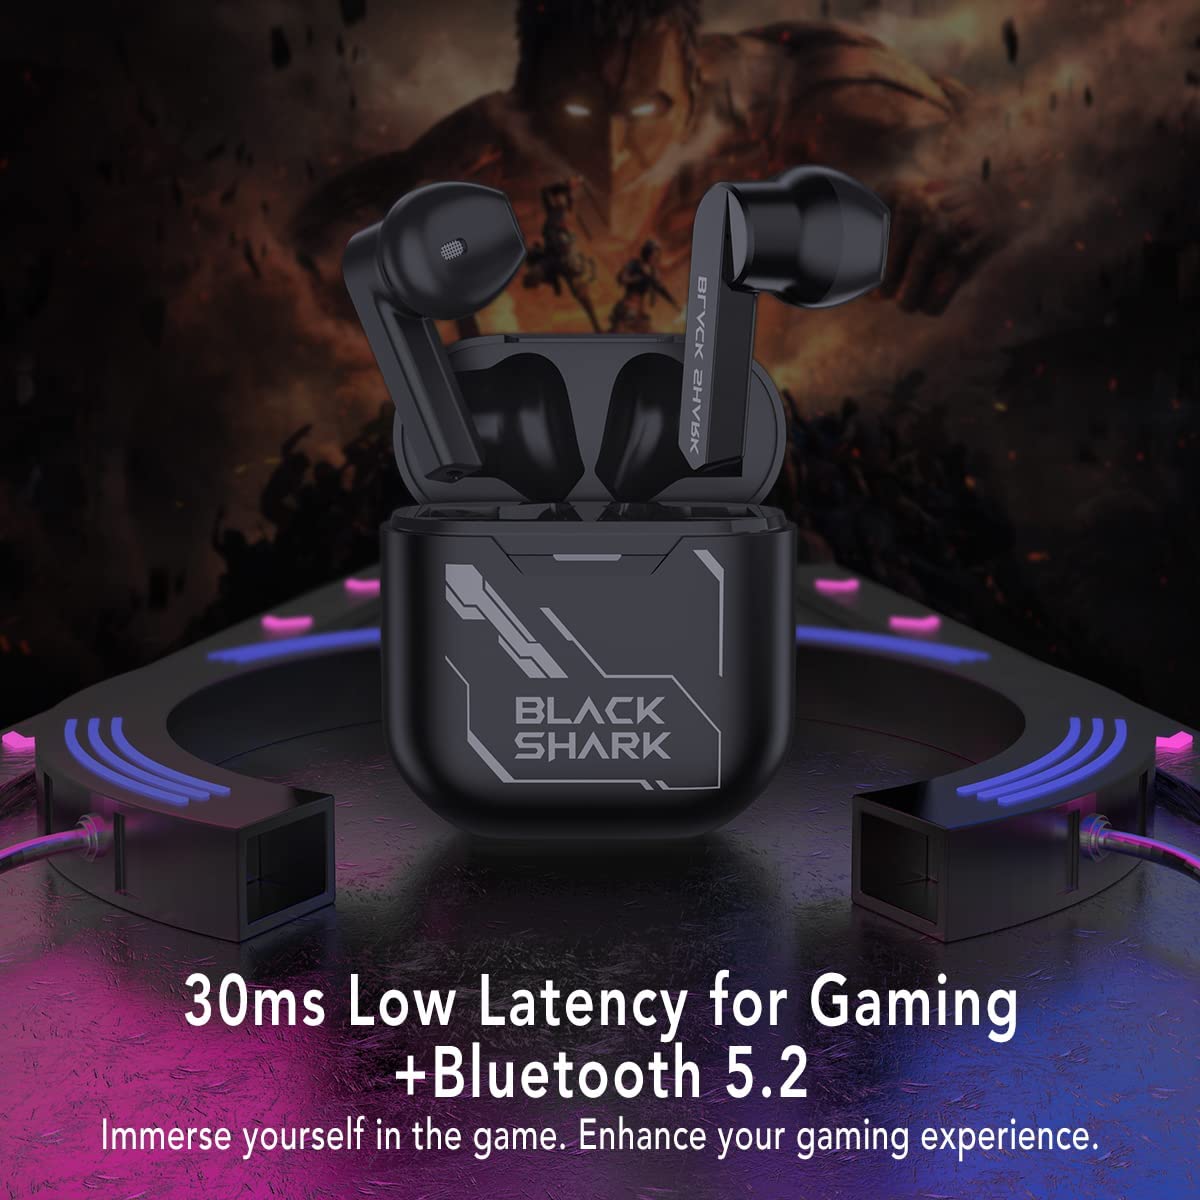 Tai Nghe Bluetooth TWS Gaming Black Shark Fengming (Joybuds) 【Độ trễ 30ms ◆ Thời lượng tới 28h ◆ Driver 14.2 mm】- Hàng Chính Hãng